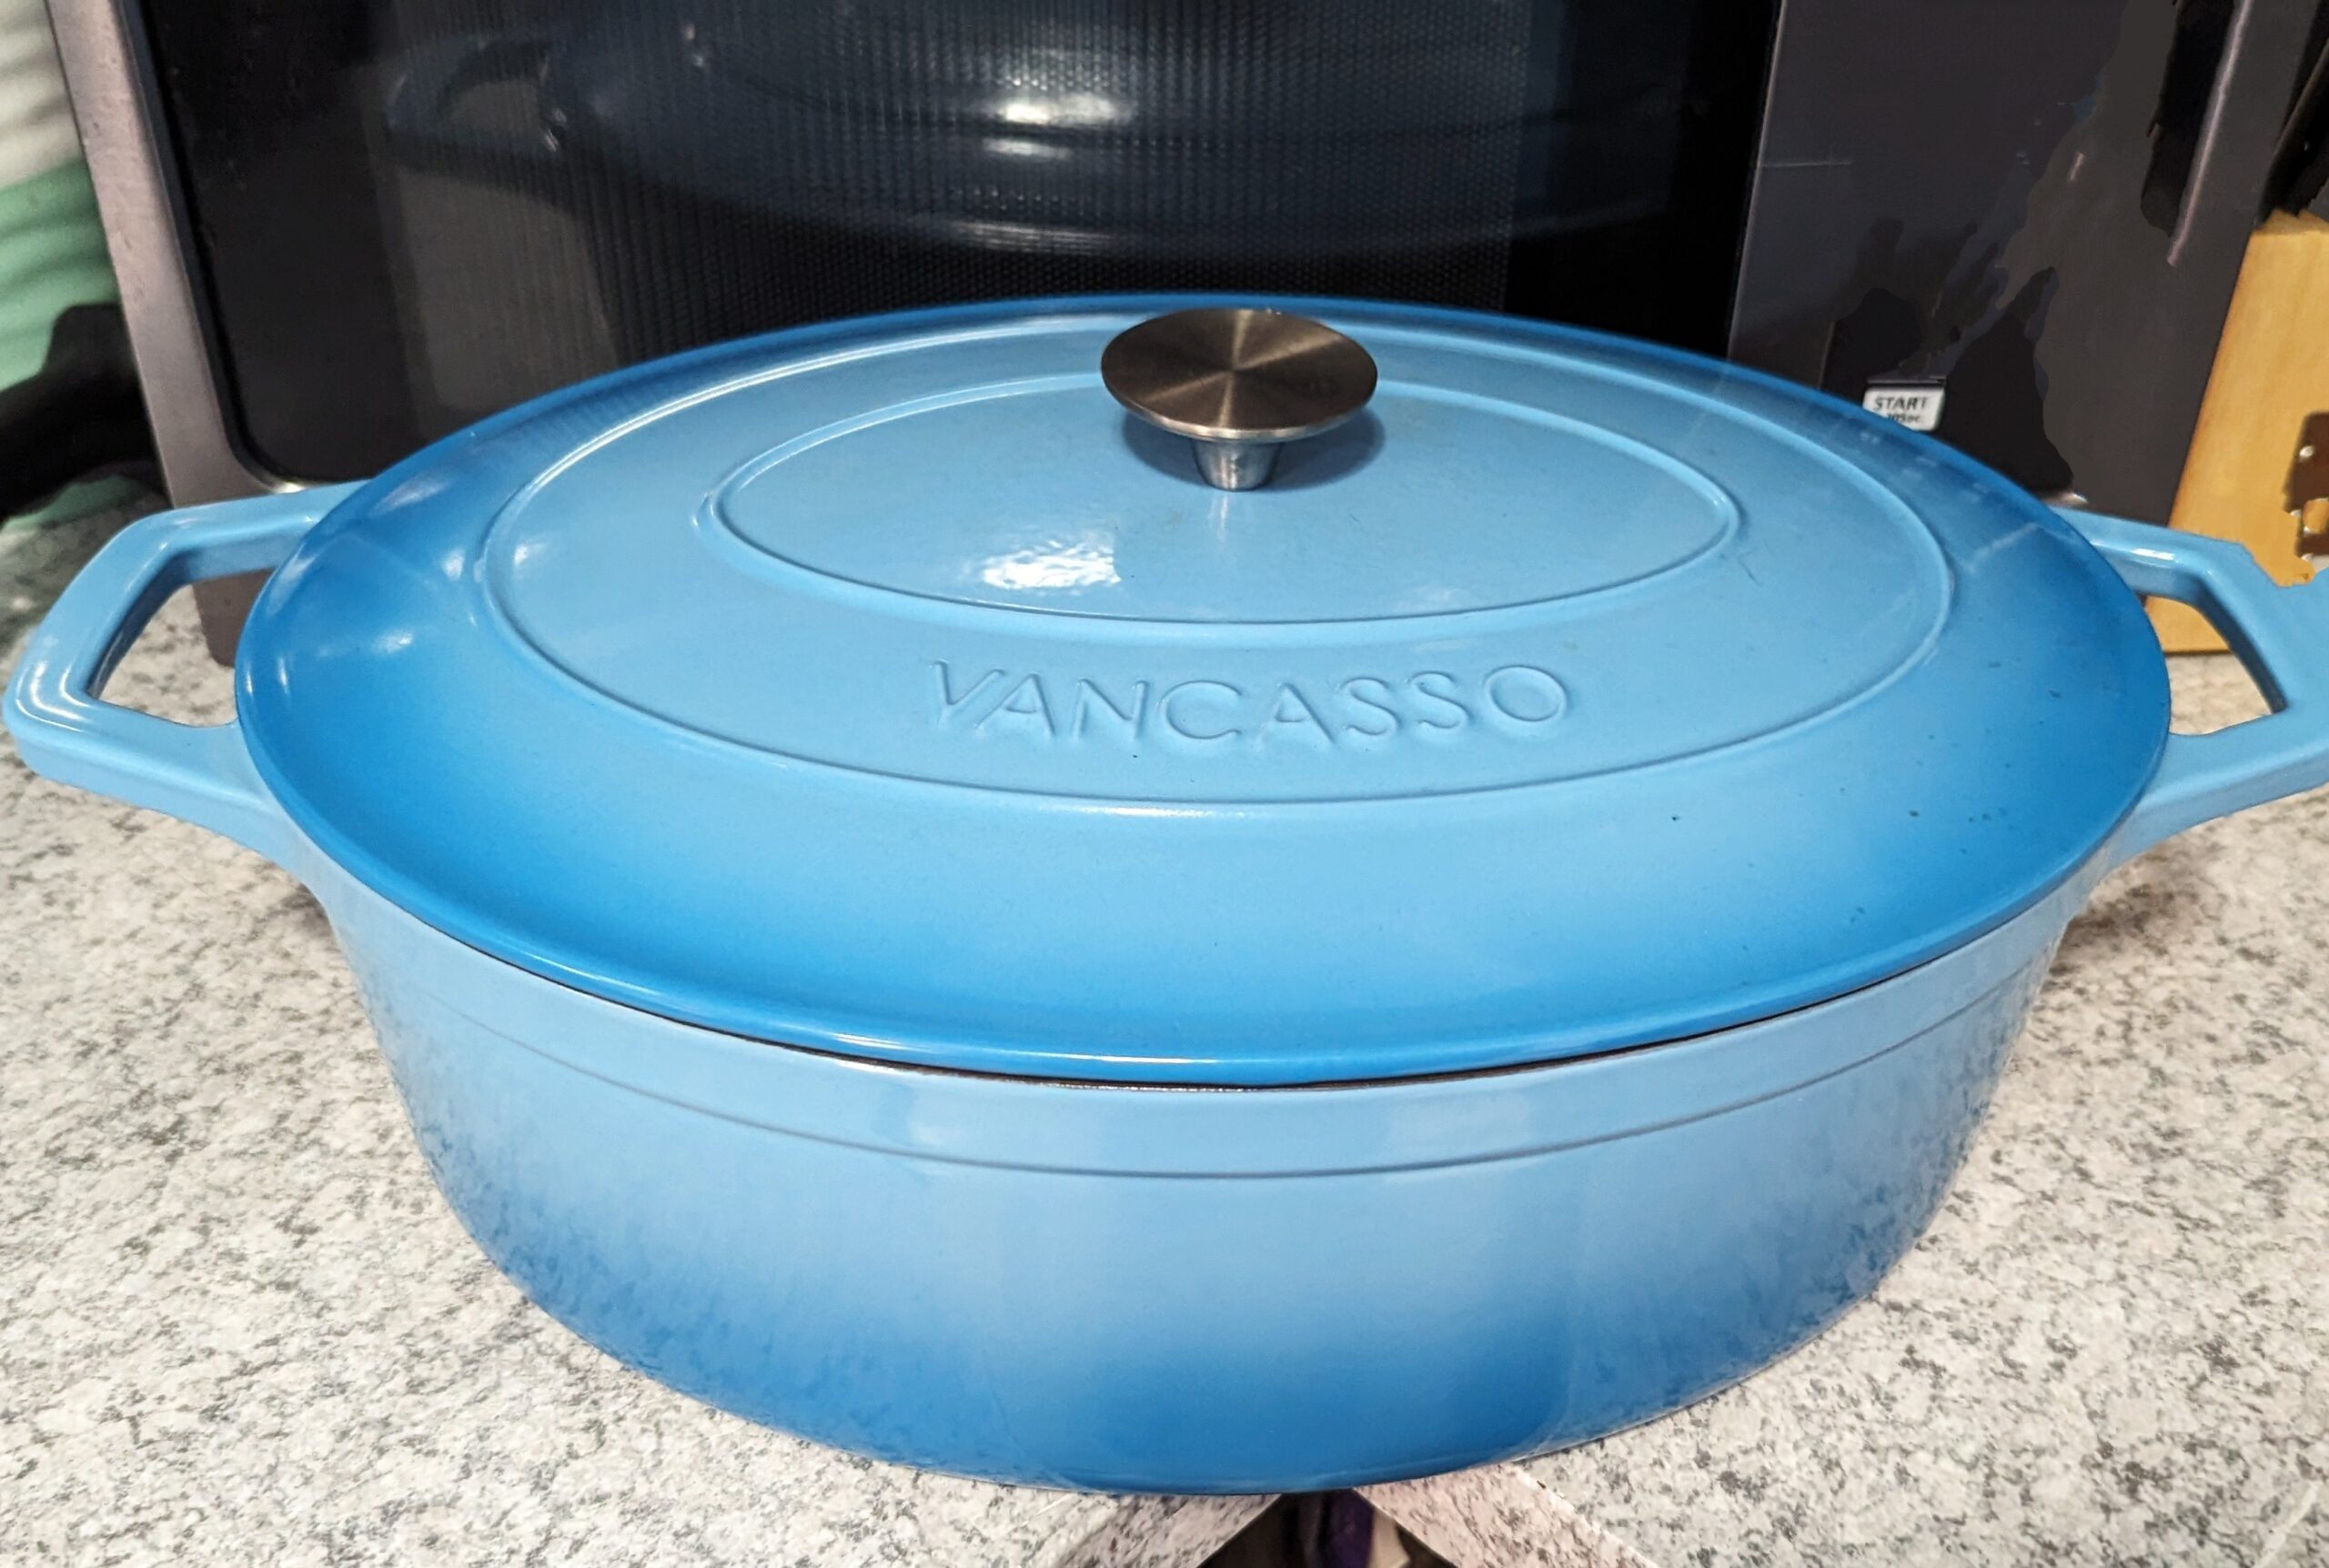 vancasso 6 Qt. Enameled Cast Iron Dutch Oven - On Sale - Bed Bath & Beyond  - 35109444